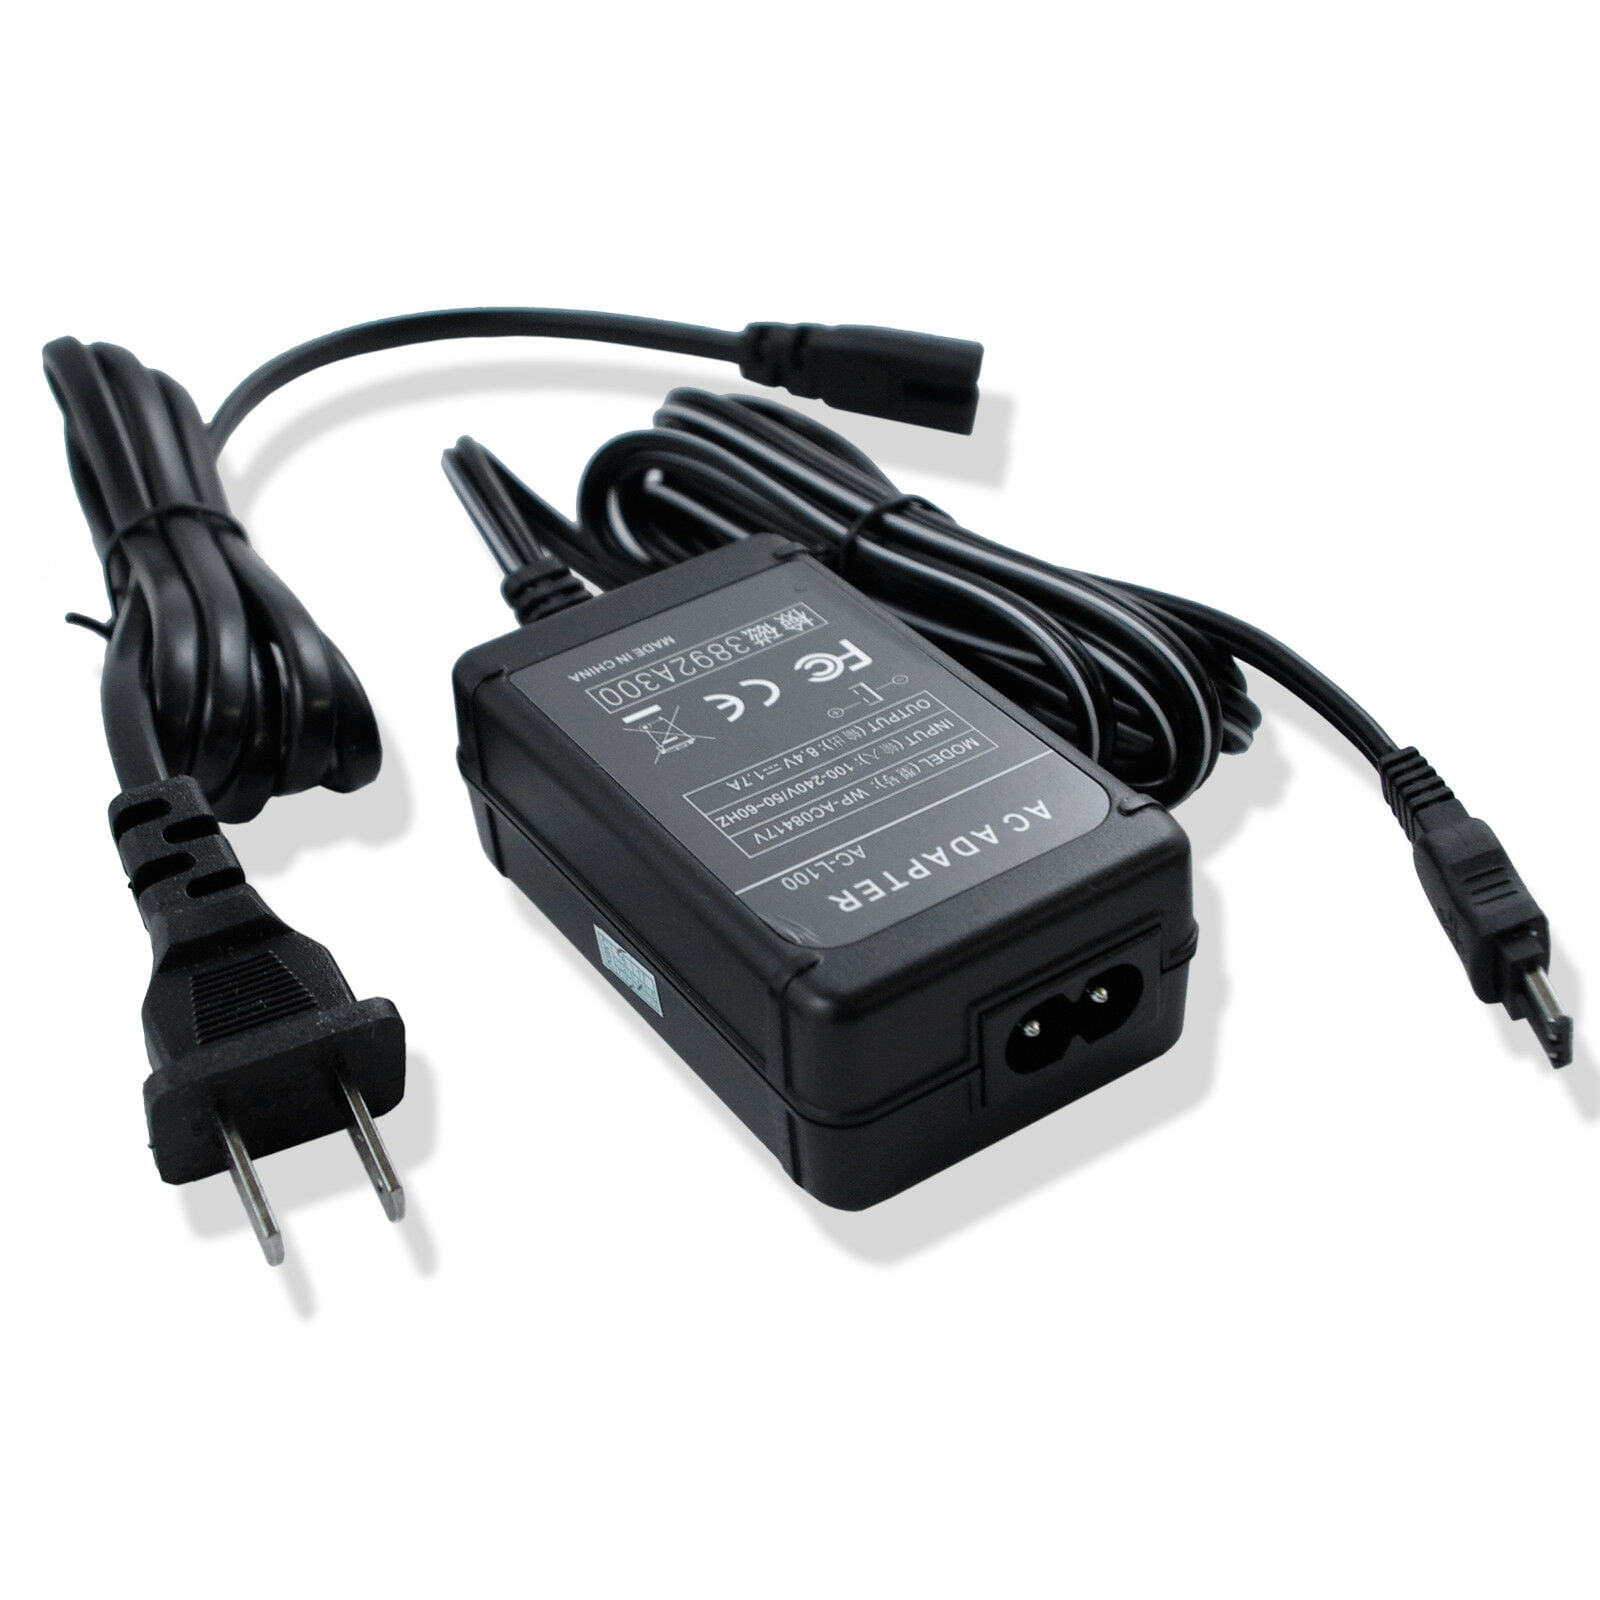 AC Power Adapter Cord For Sony AC-L100 AC-L10 AC-L10A AC-L10B AC-L10C - Walmart.com